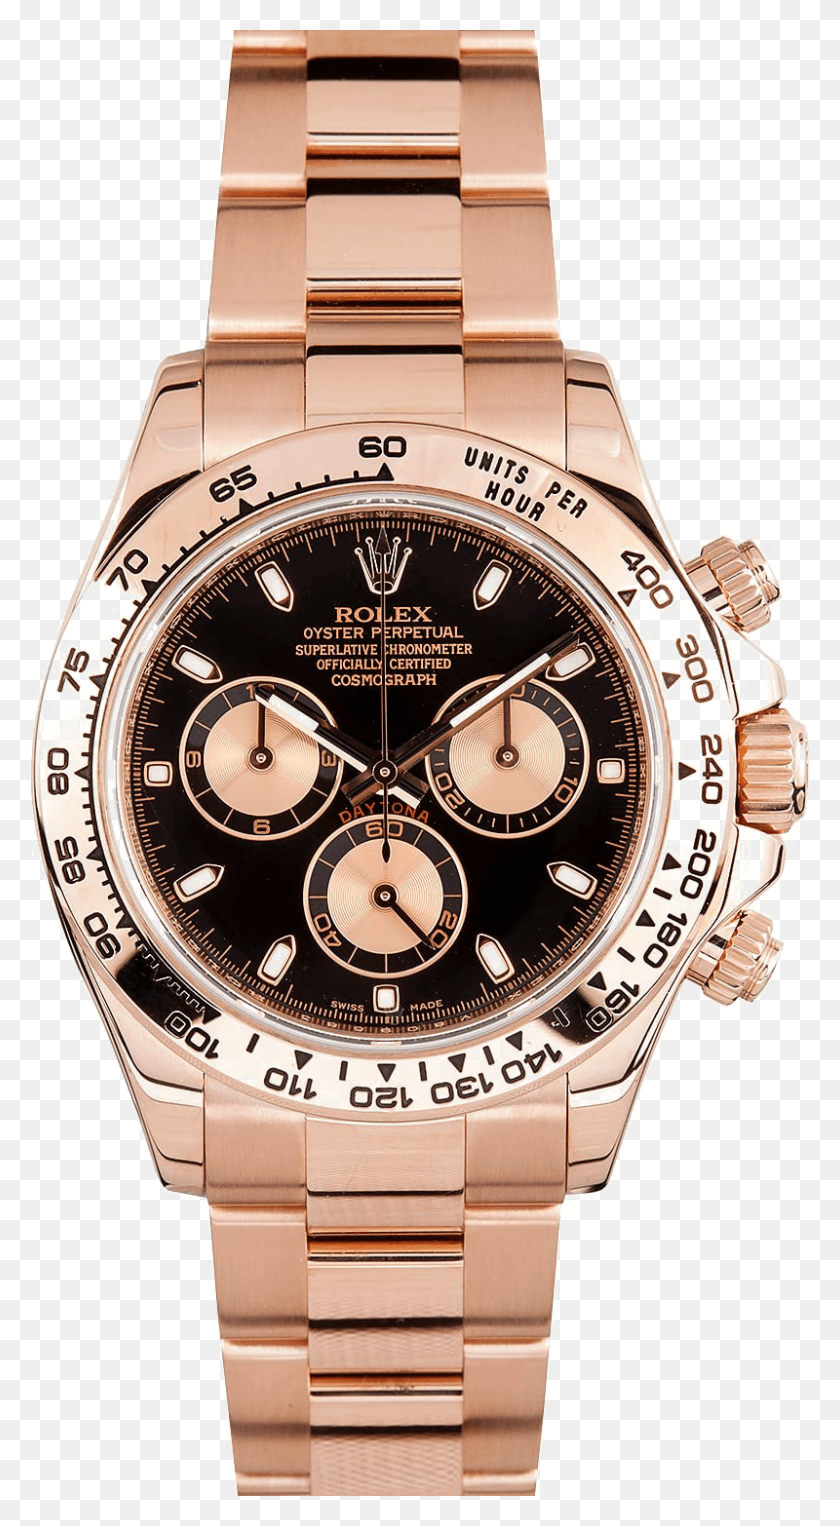 800x1504 Rolex Daytona Rose Gold Black Dial На Прозрачном Фоне, Наручные Часы, Башня С Часами, Башня Png Скачать